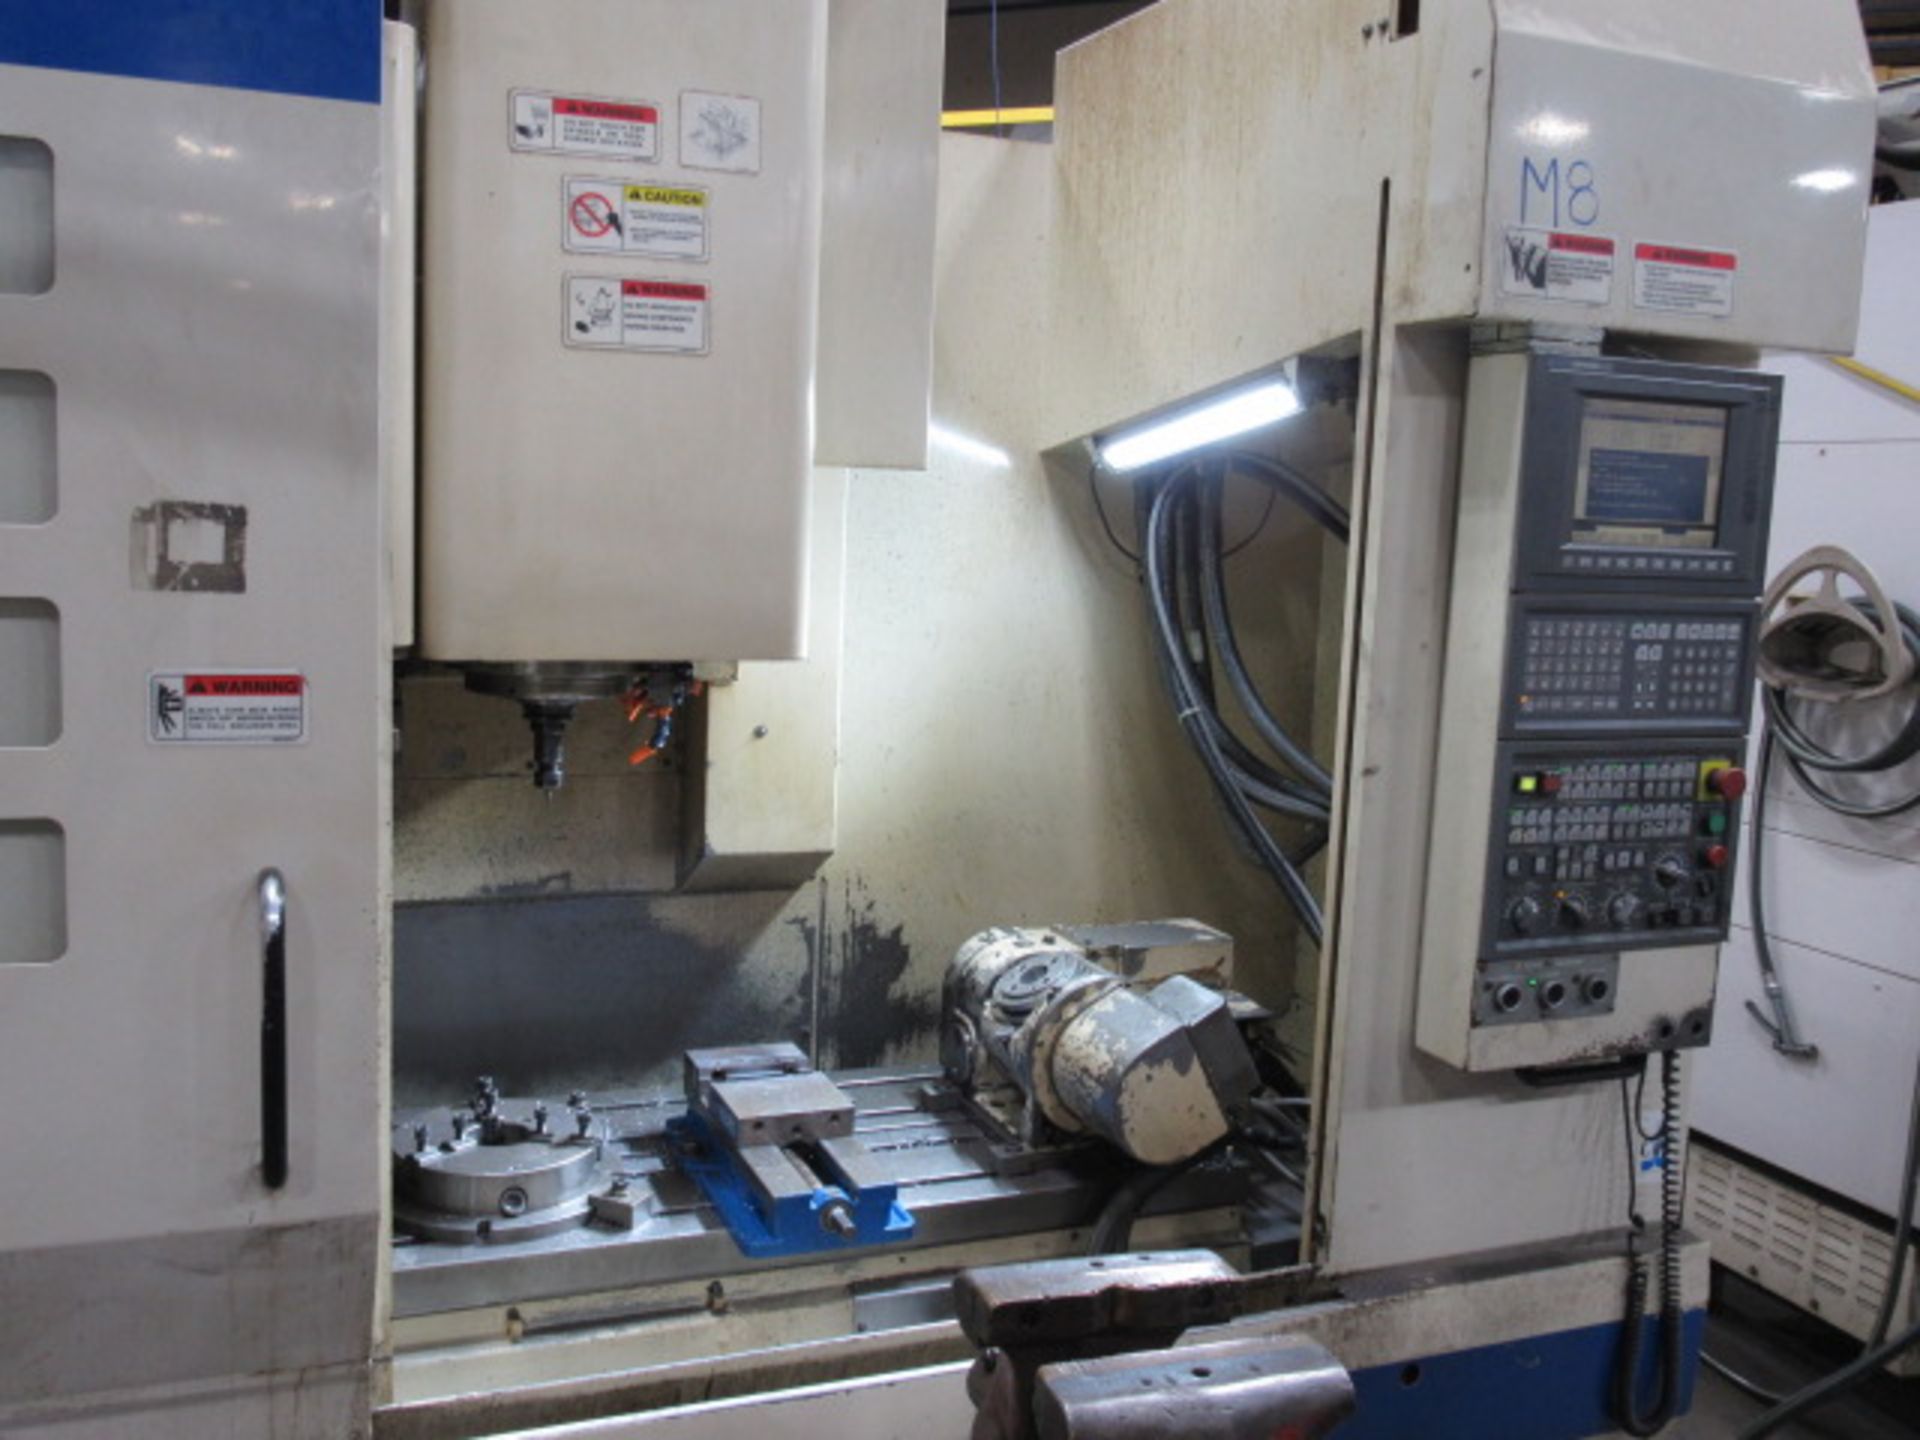 Okuma MC-V4020 5 Axis CNC Vertical Machining Center - Image 10 of 18